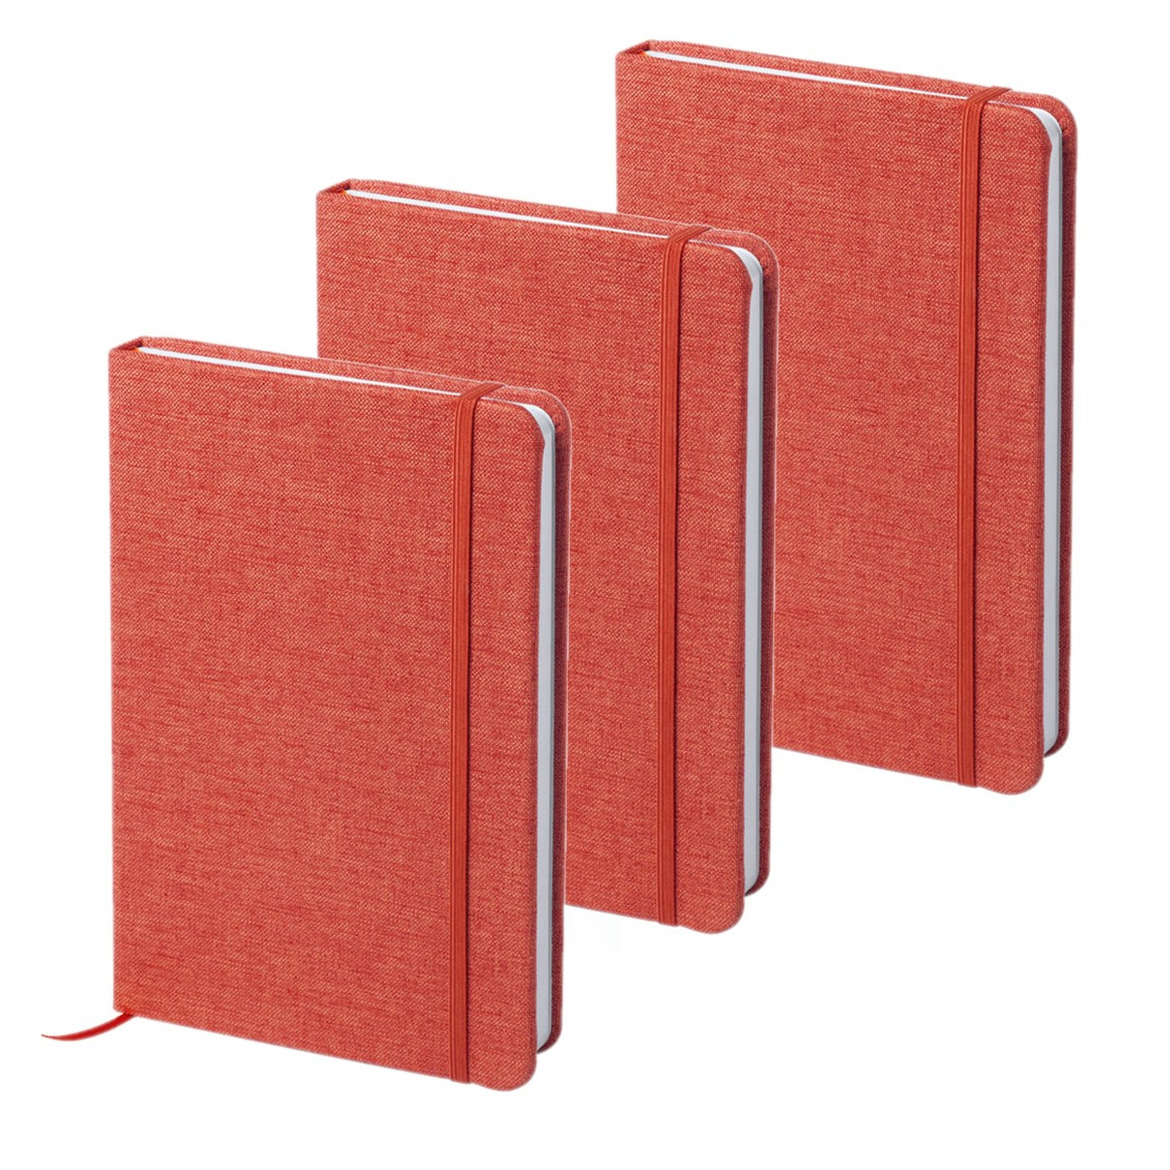 Set van 5x stuks notitieboekje gelinieerd canvas kaft rood met elastiek 13 x 18 cm